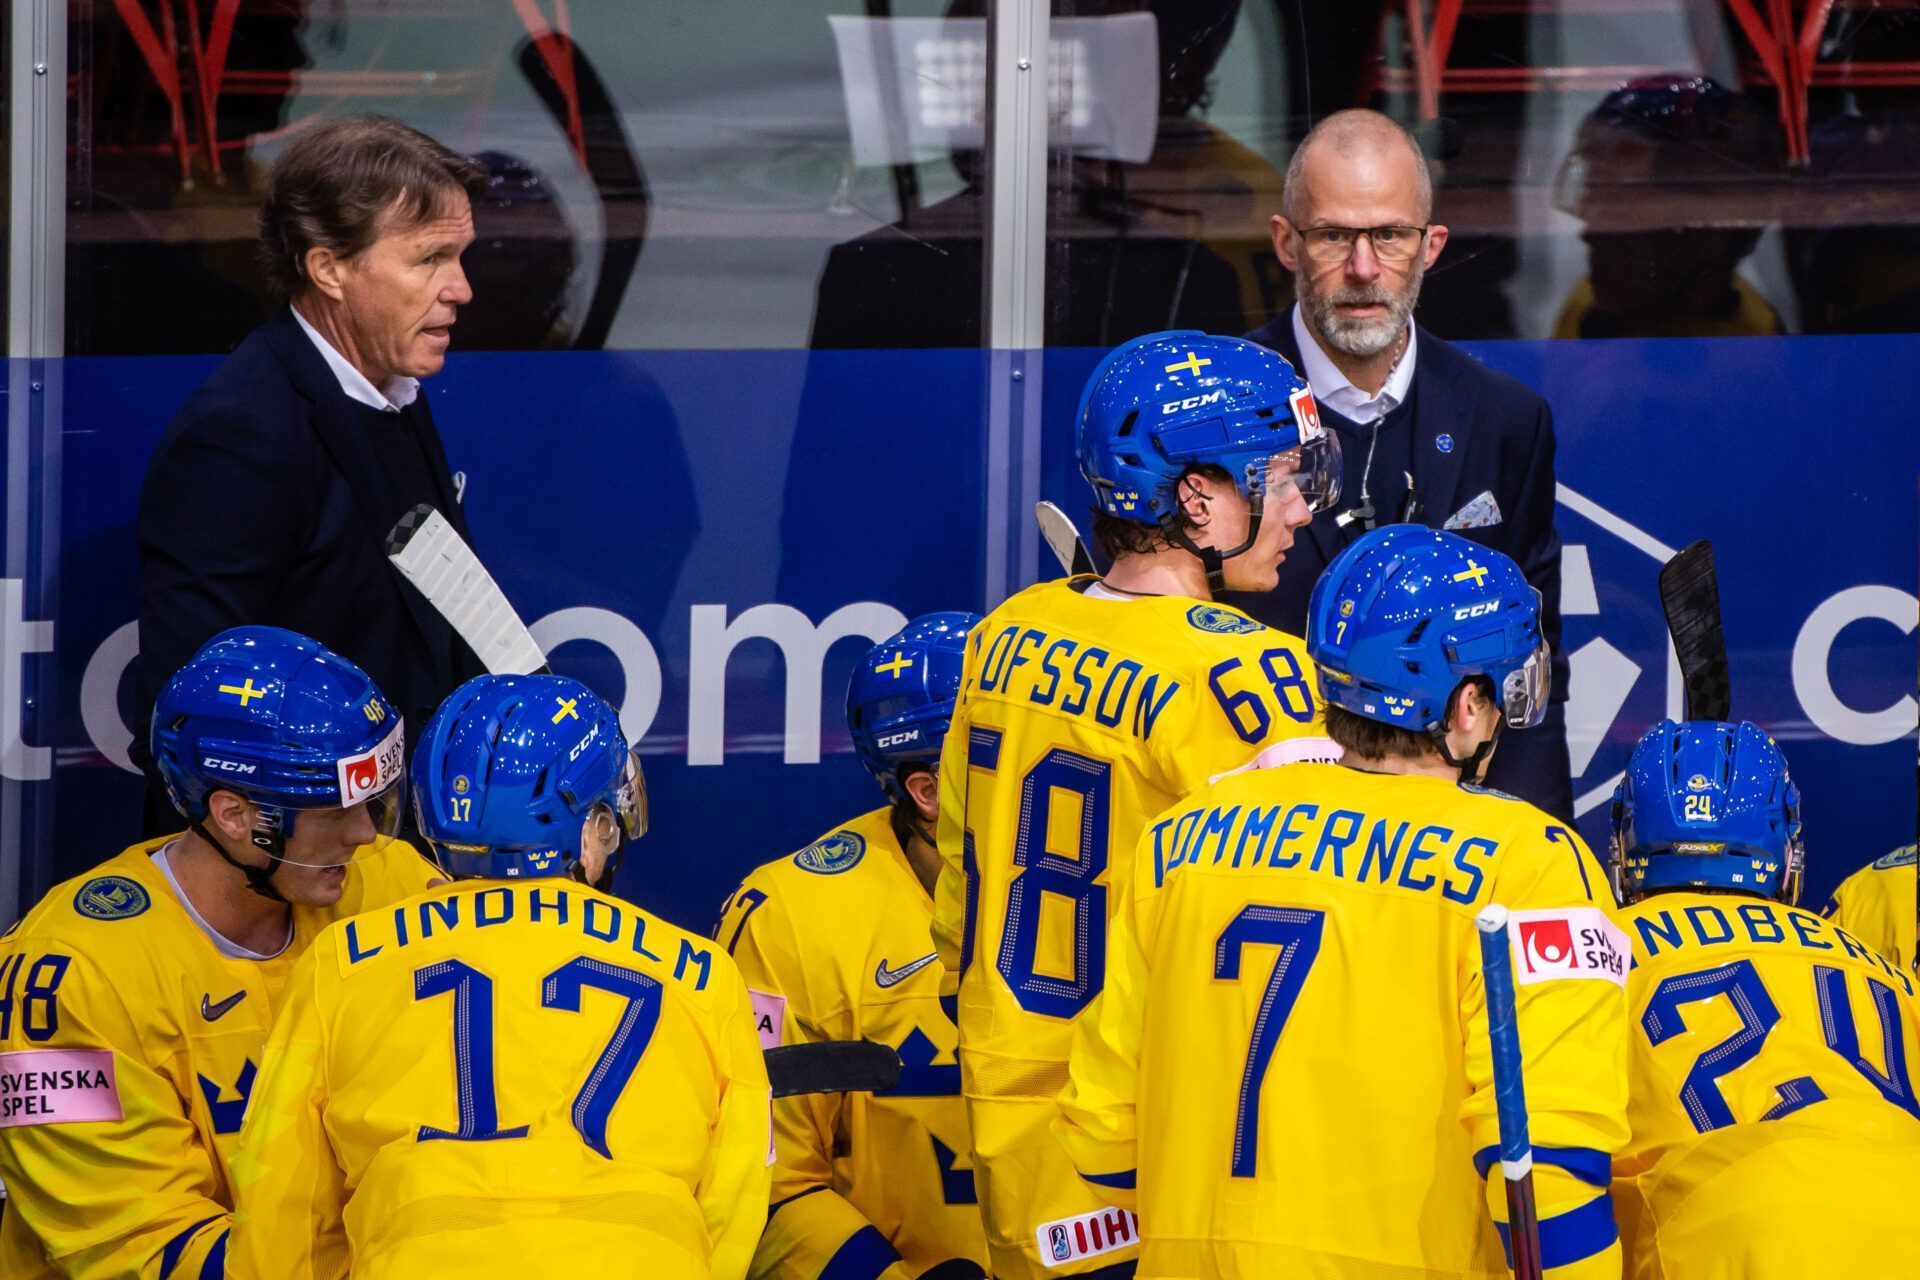 Швеция — Великобритания прогноз на матч 17 мая на ЧМ-2022 по хоккею: ставки и коэффициенты на игру